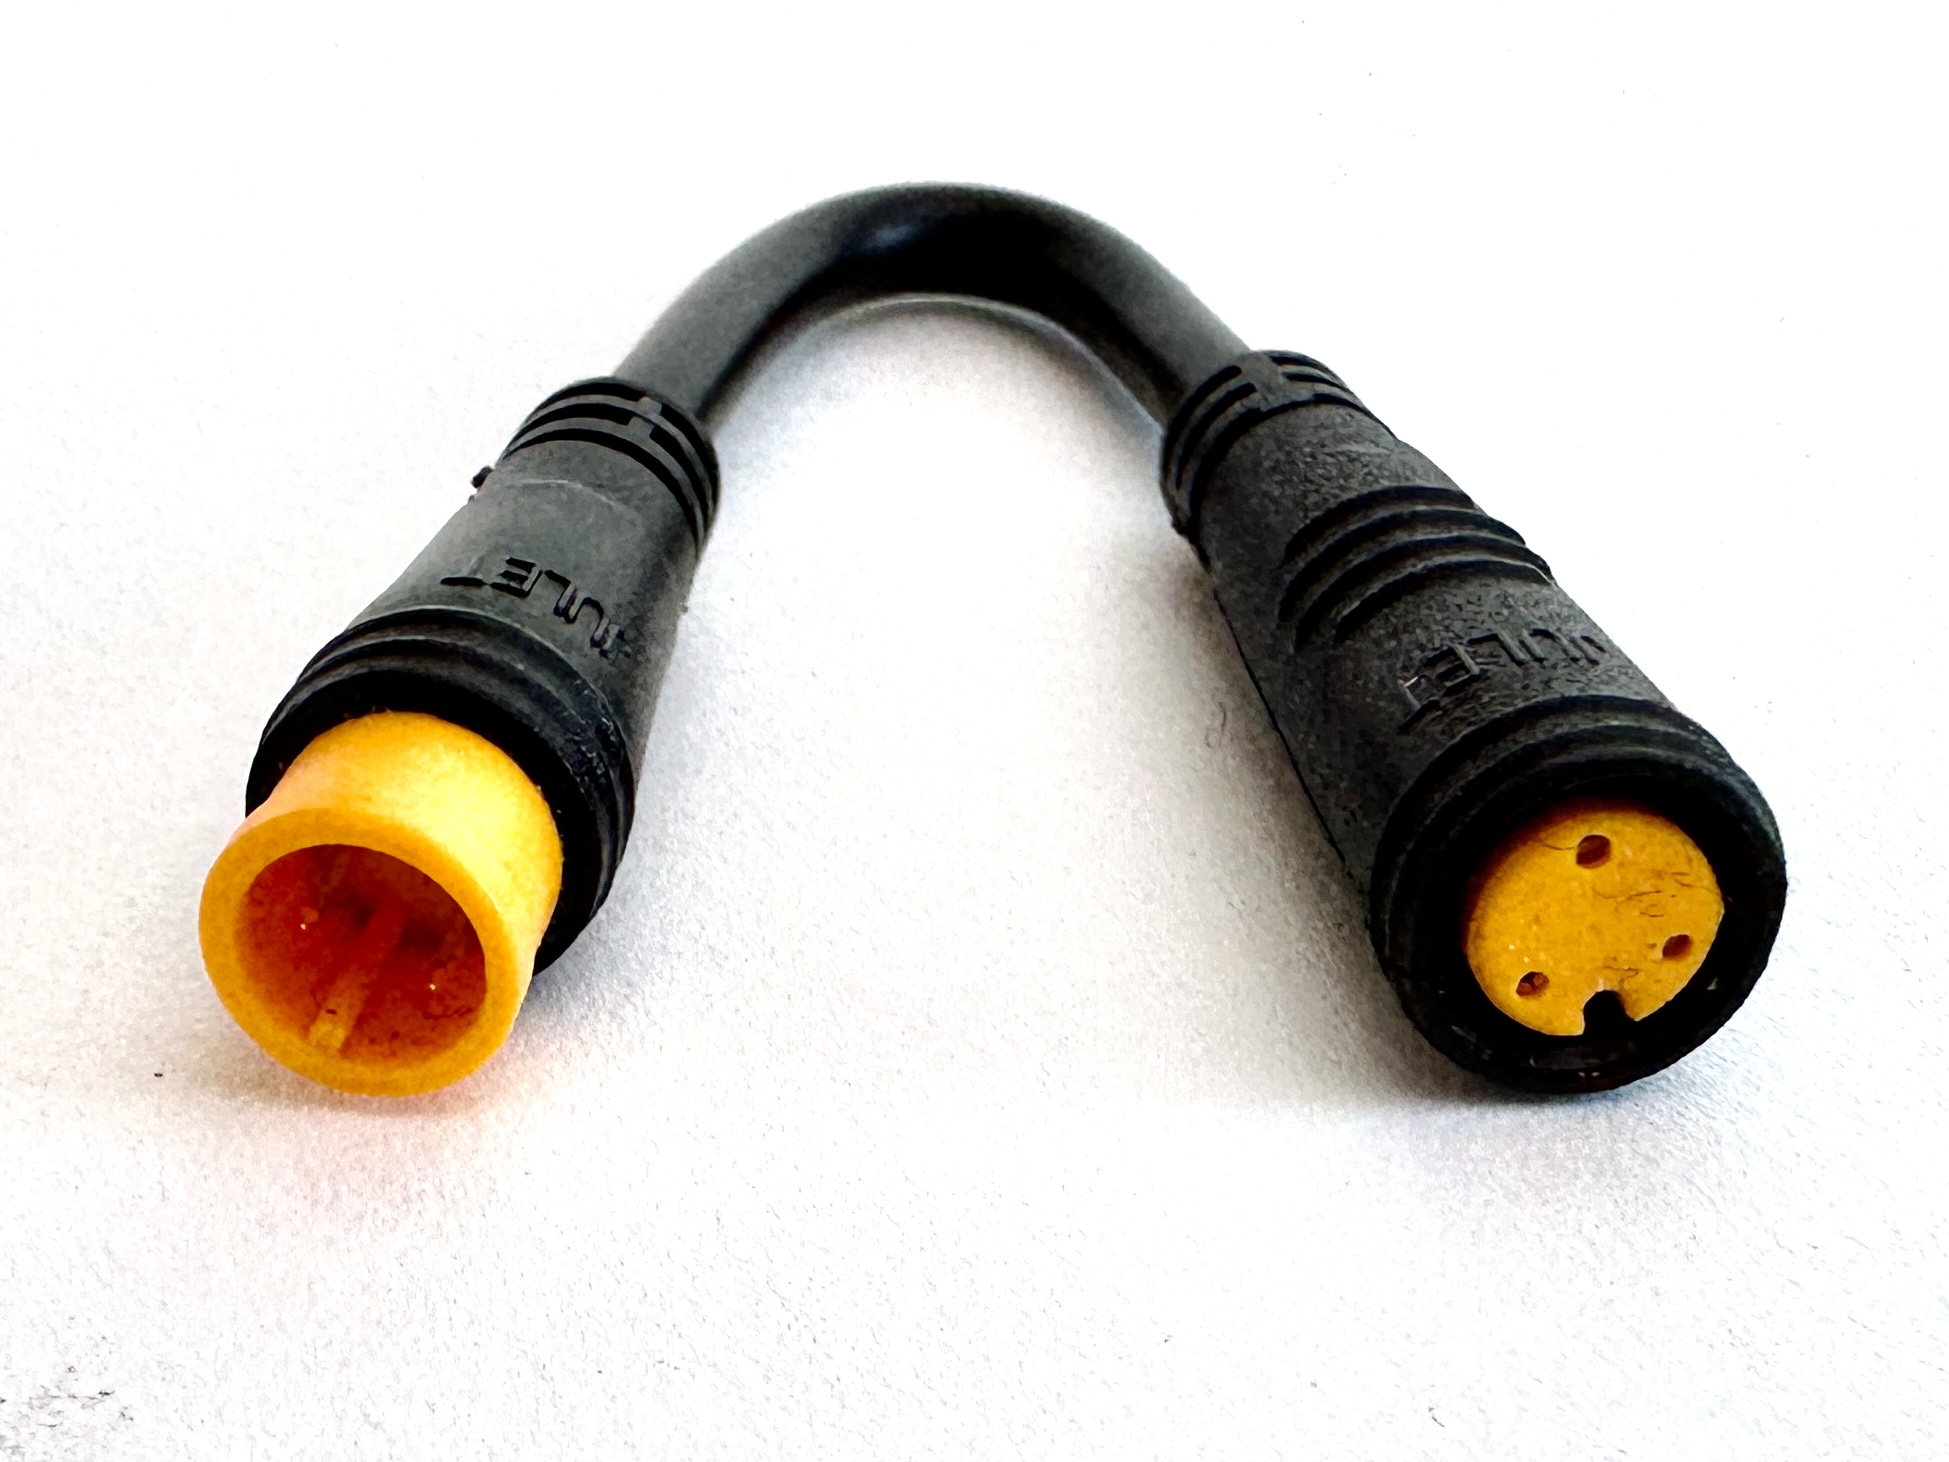 HIGO / Julet Câble d'extension 5,5 cm pour Ebike, 2 PIN femelle à mâle, jaune